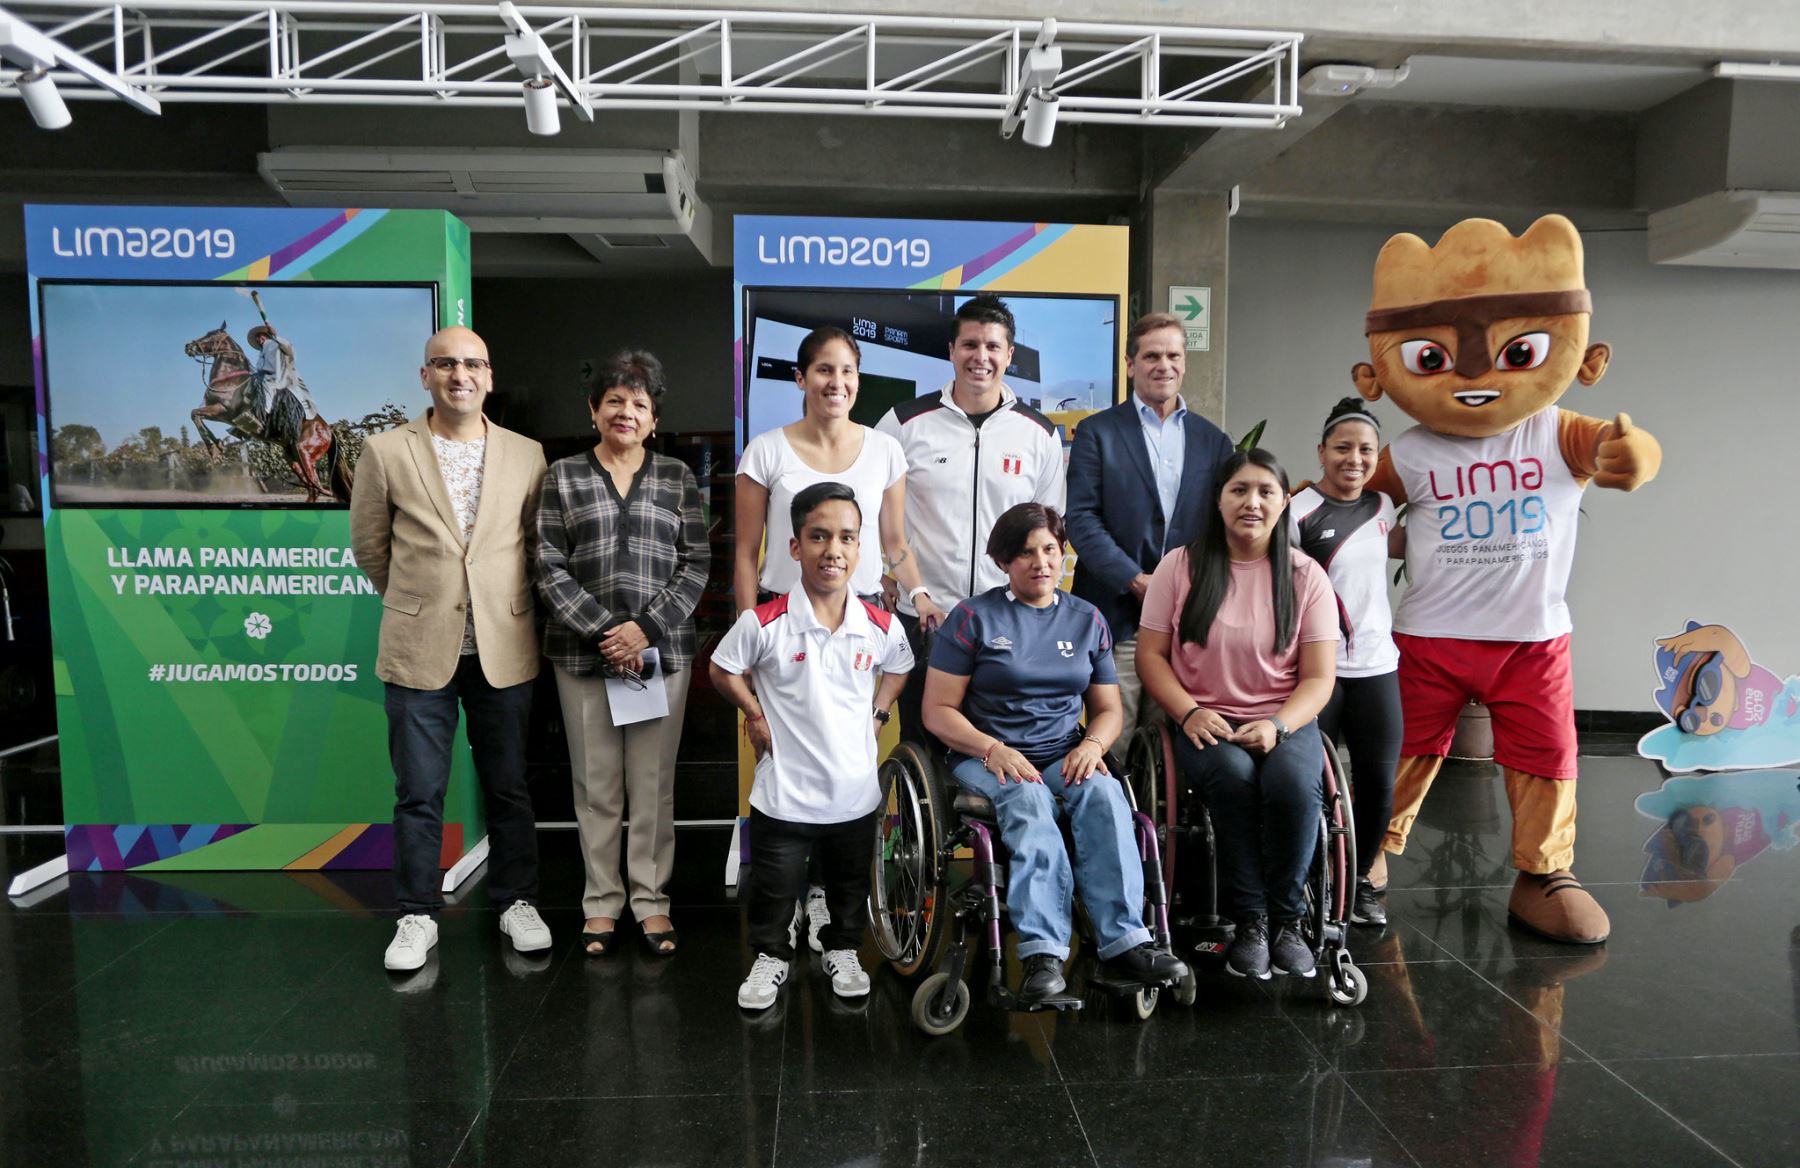 Exposición fotográfica de los Juegos Lima 2019 en la Biblioteca Nacional